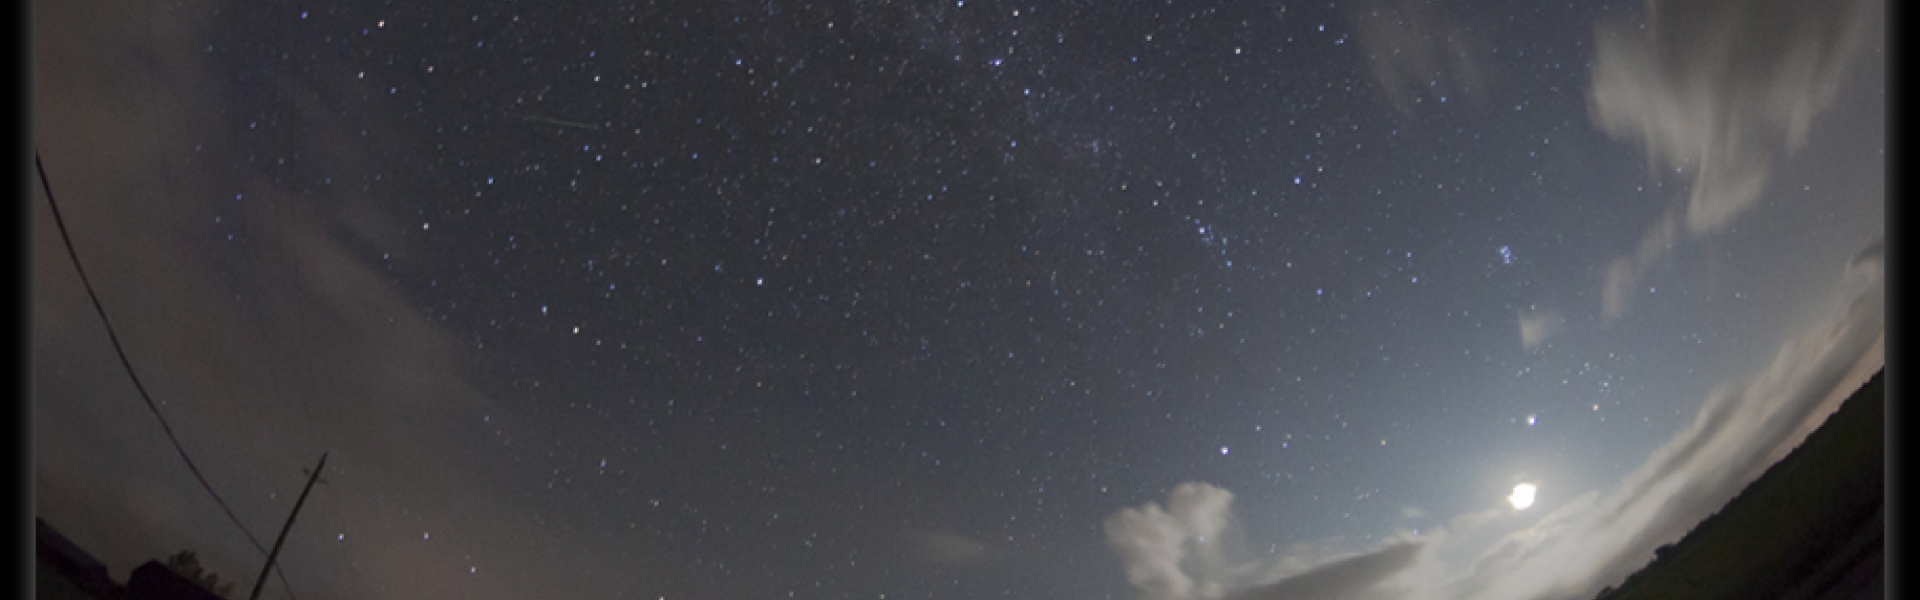 2012 Perseid Meteor Shower, by Bill Longo, RASC Member